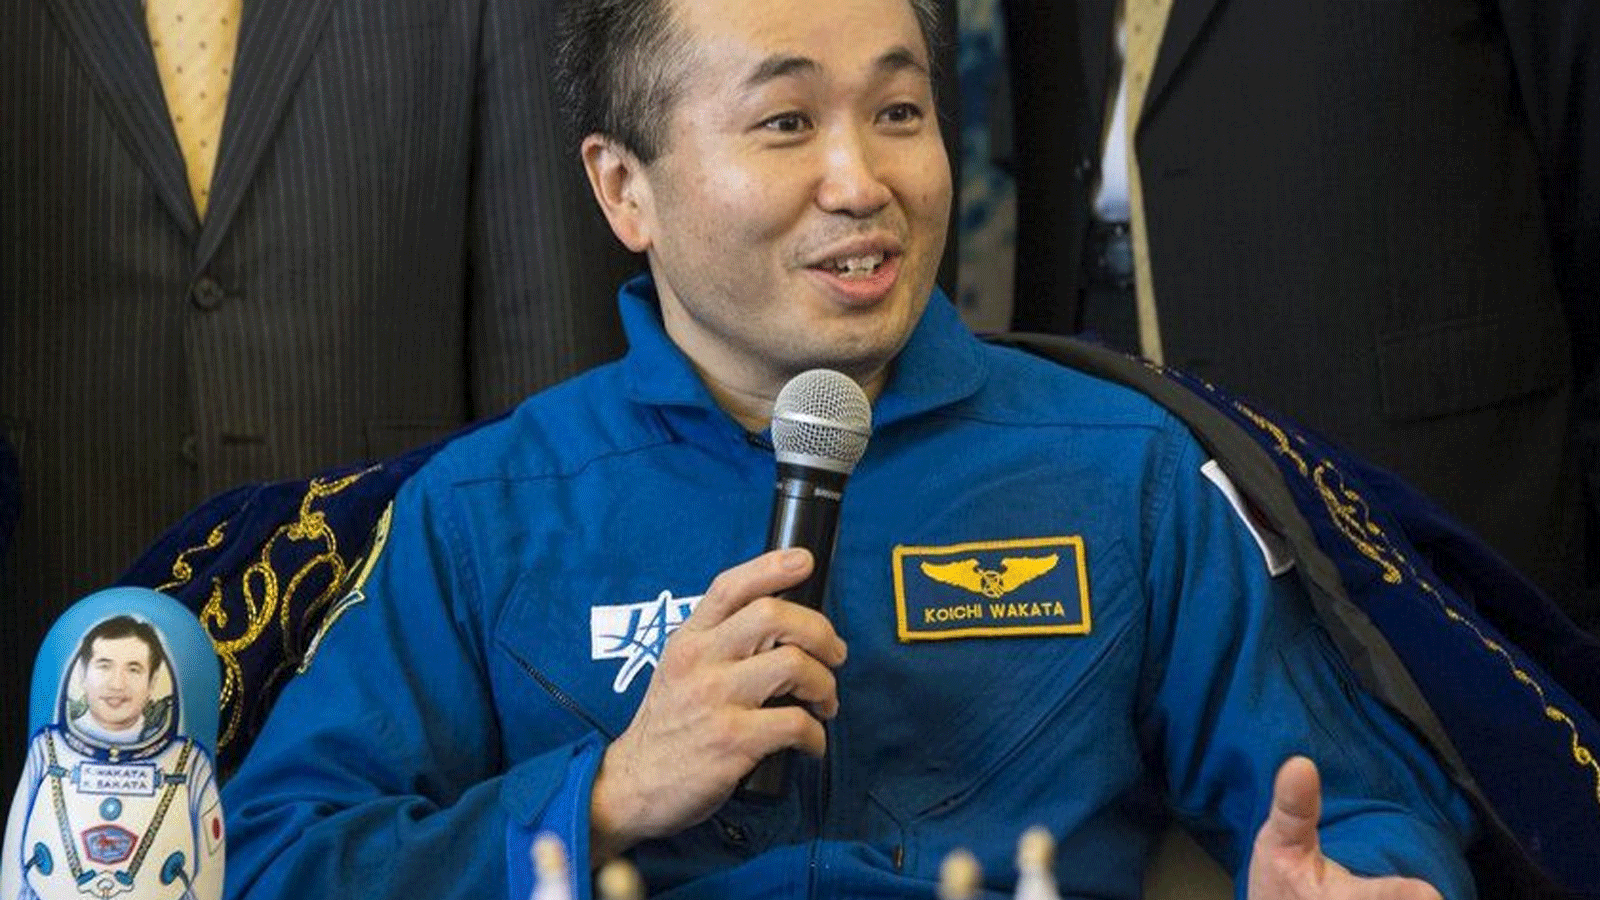 الياباني كويشي واكاتا، نائب رئيس JAXA والمدير العام لتكنولوجيا رحلات الفضاء البشرية يجيب على أسئلة وسائل الإعلام في مطار كاراجاندا في كازاخستان. عام 2014 بعد أن قاد بعثة محطة الفضاء الدولية 39.